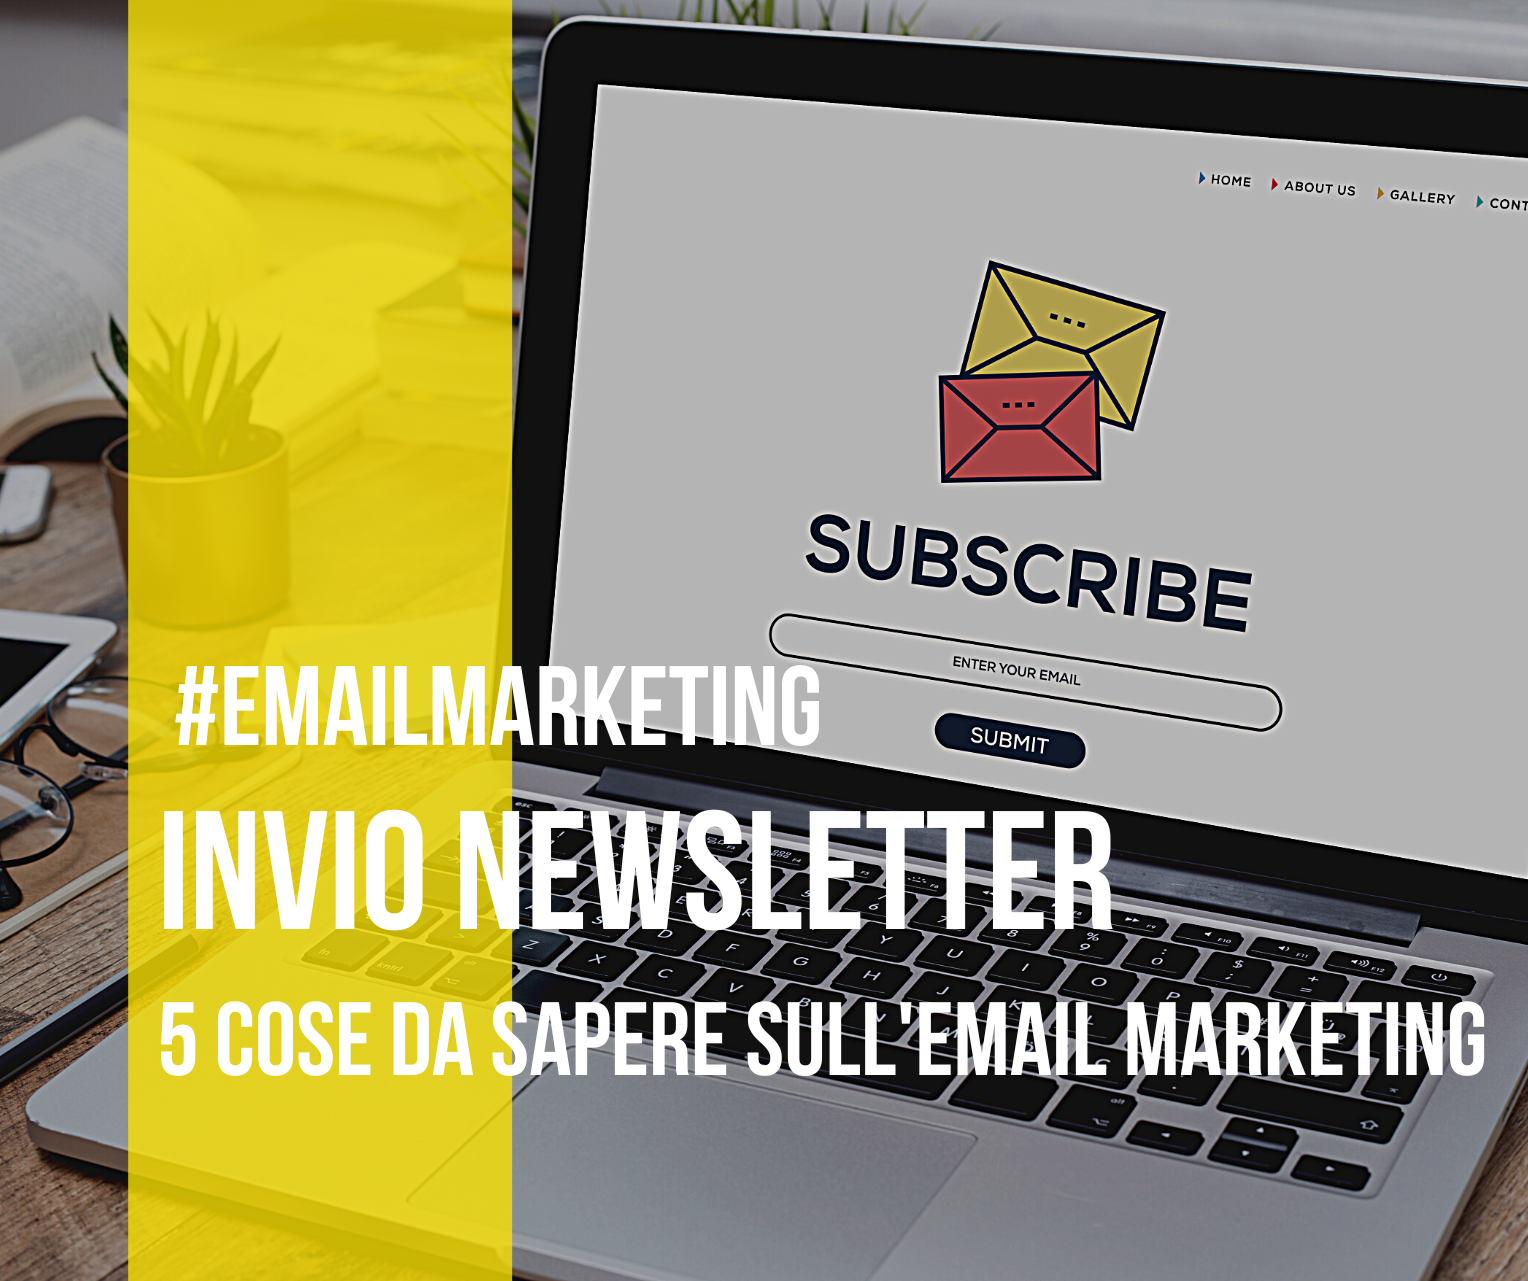 Invio newsletter: cosa dovresti sapere sull'email marketing